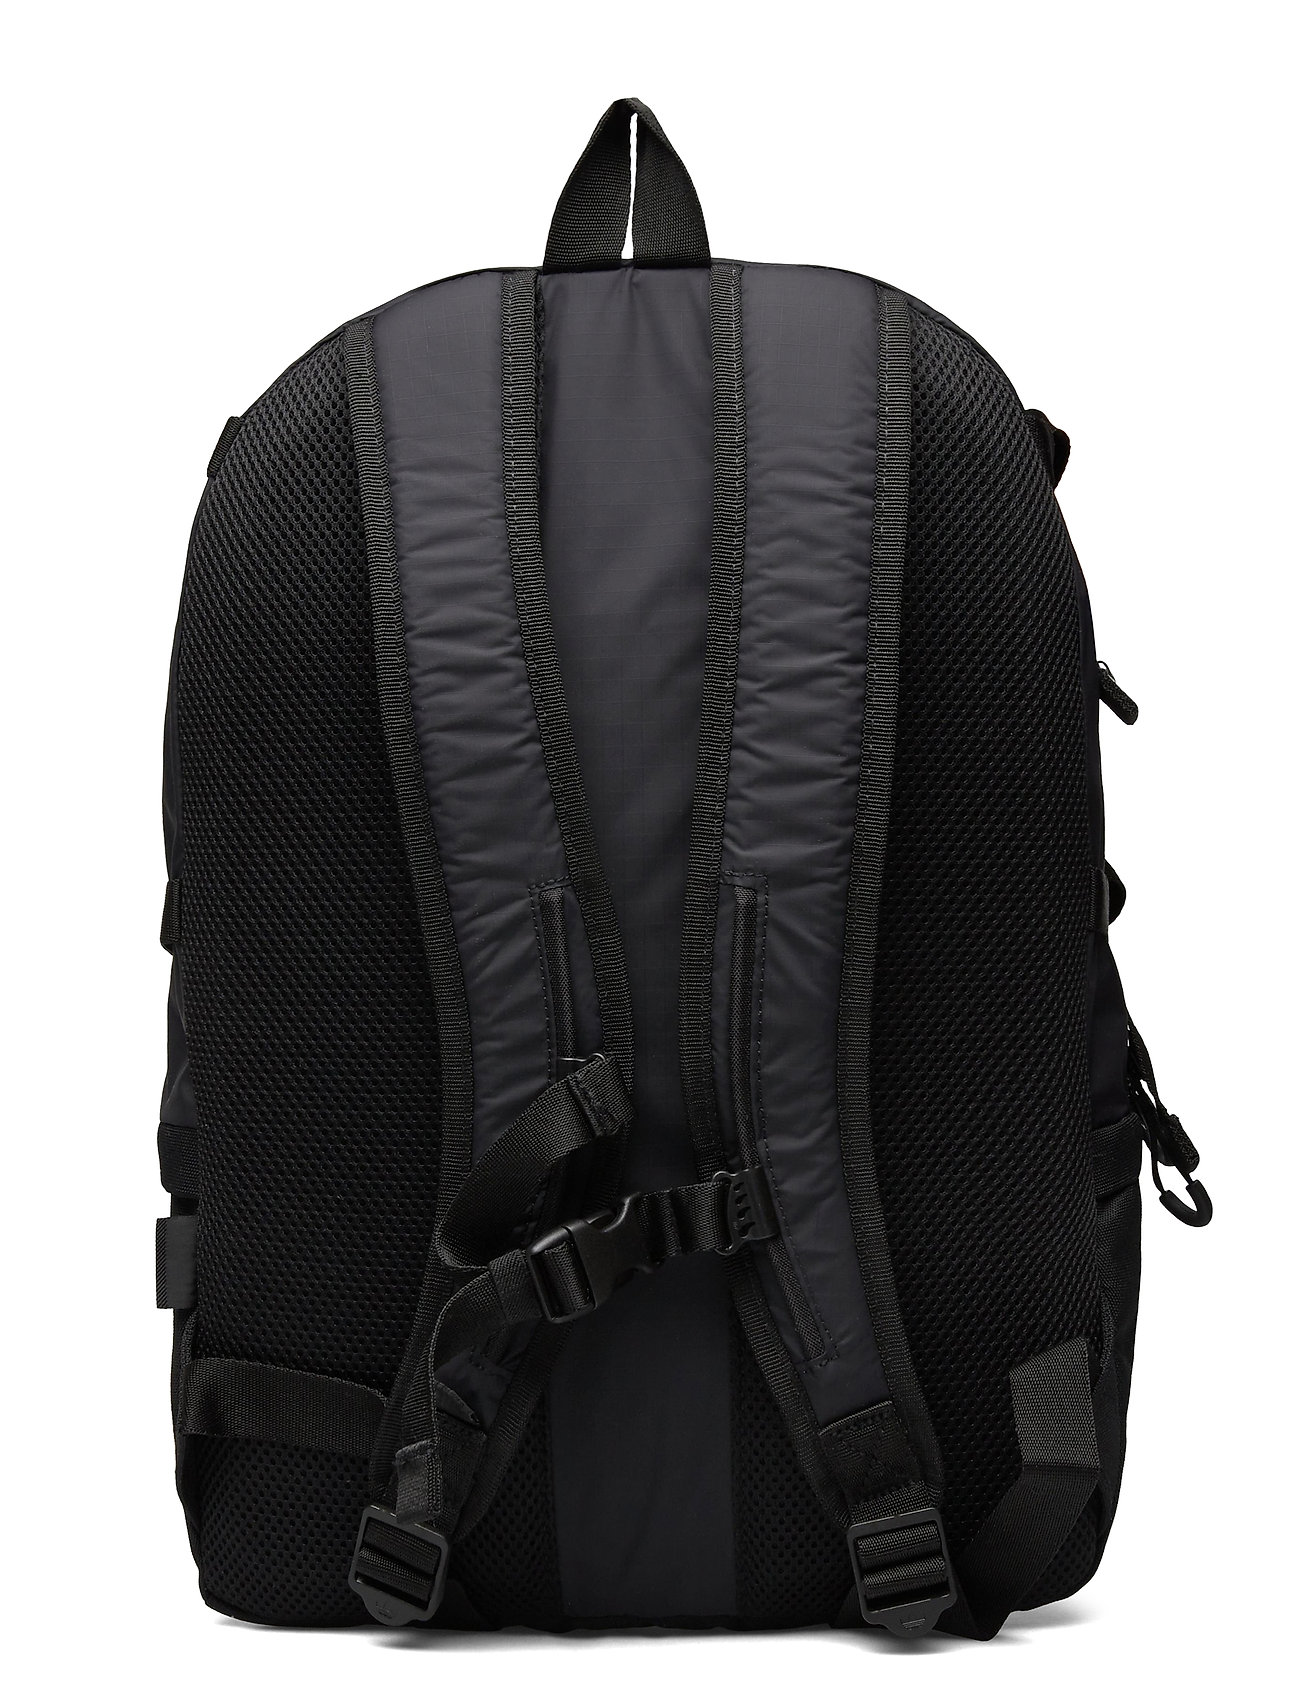 Adidas – Adventure Cordura Backpack Rygsæk Taske Sort Adidas Originals til herre i Sort - Pashion.dk